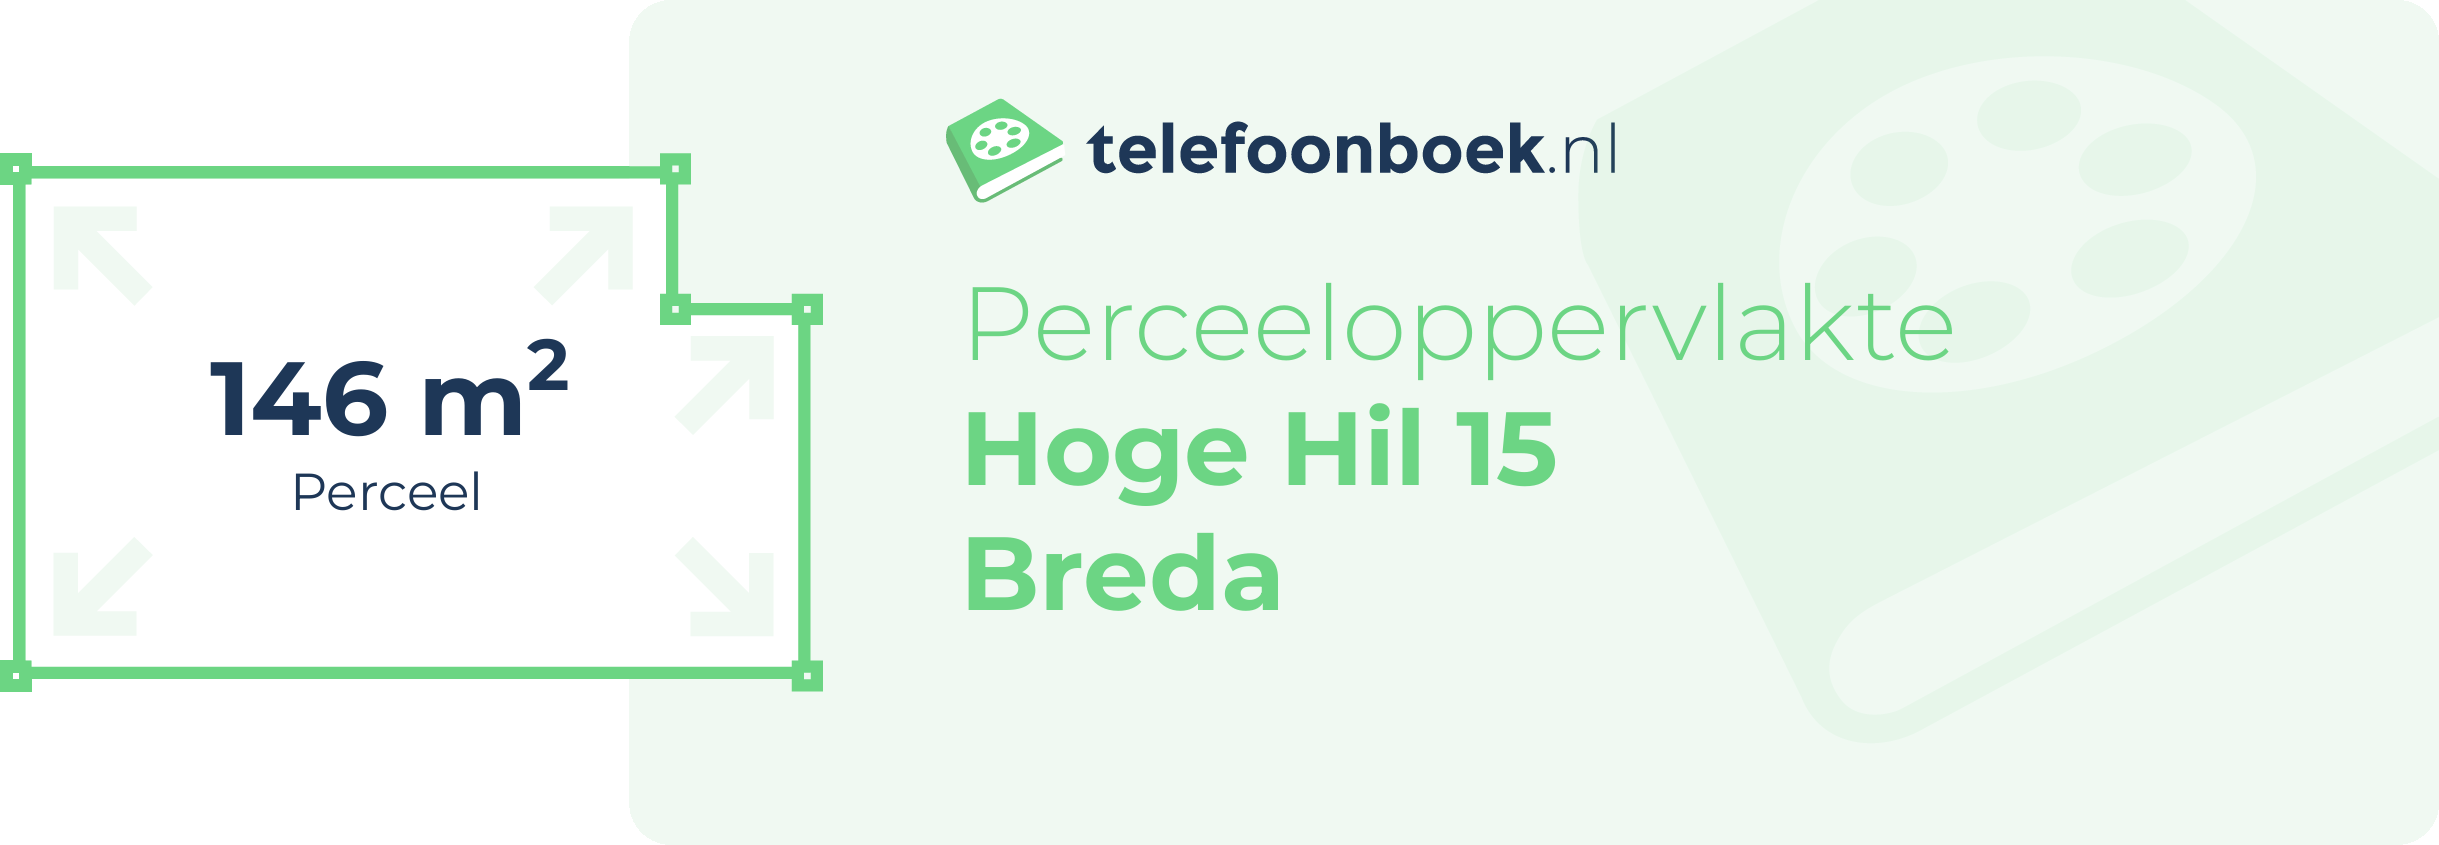 Perceeloppervlakte Hoge Hil 15 Breda